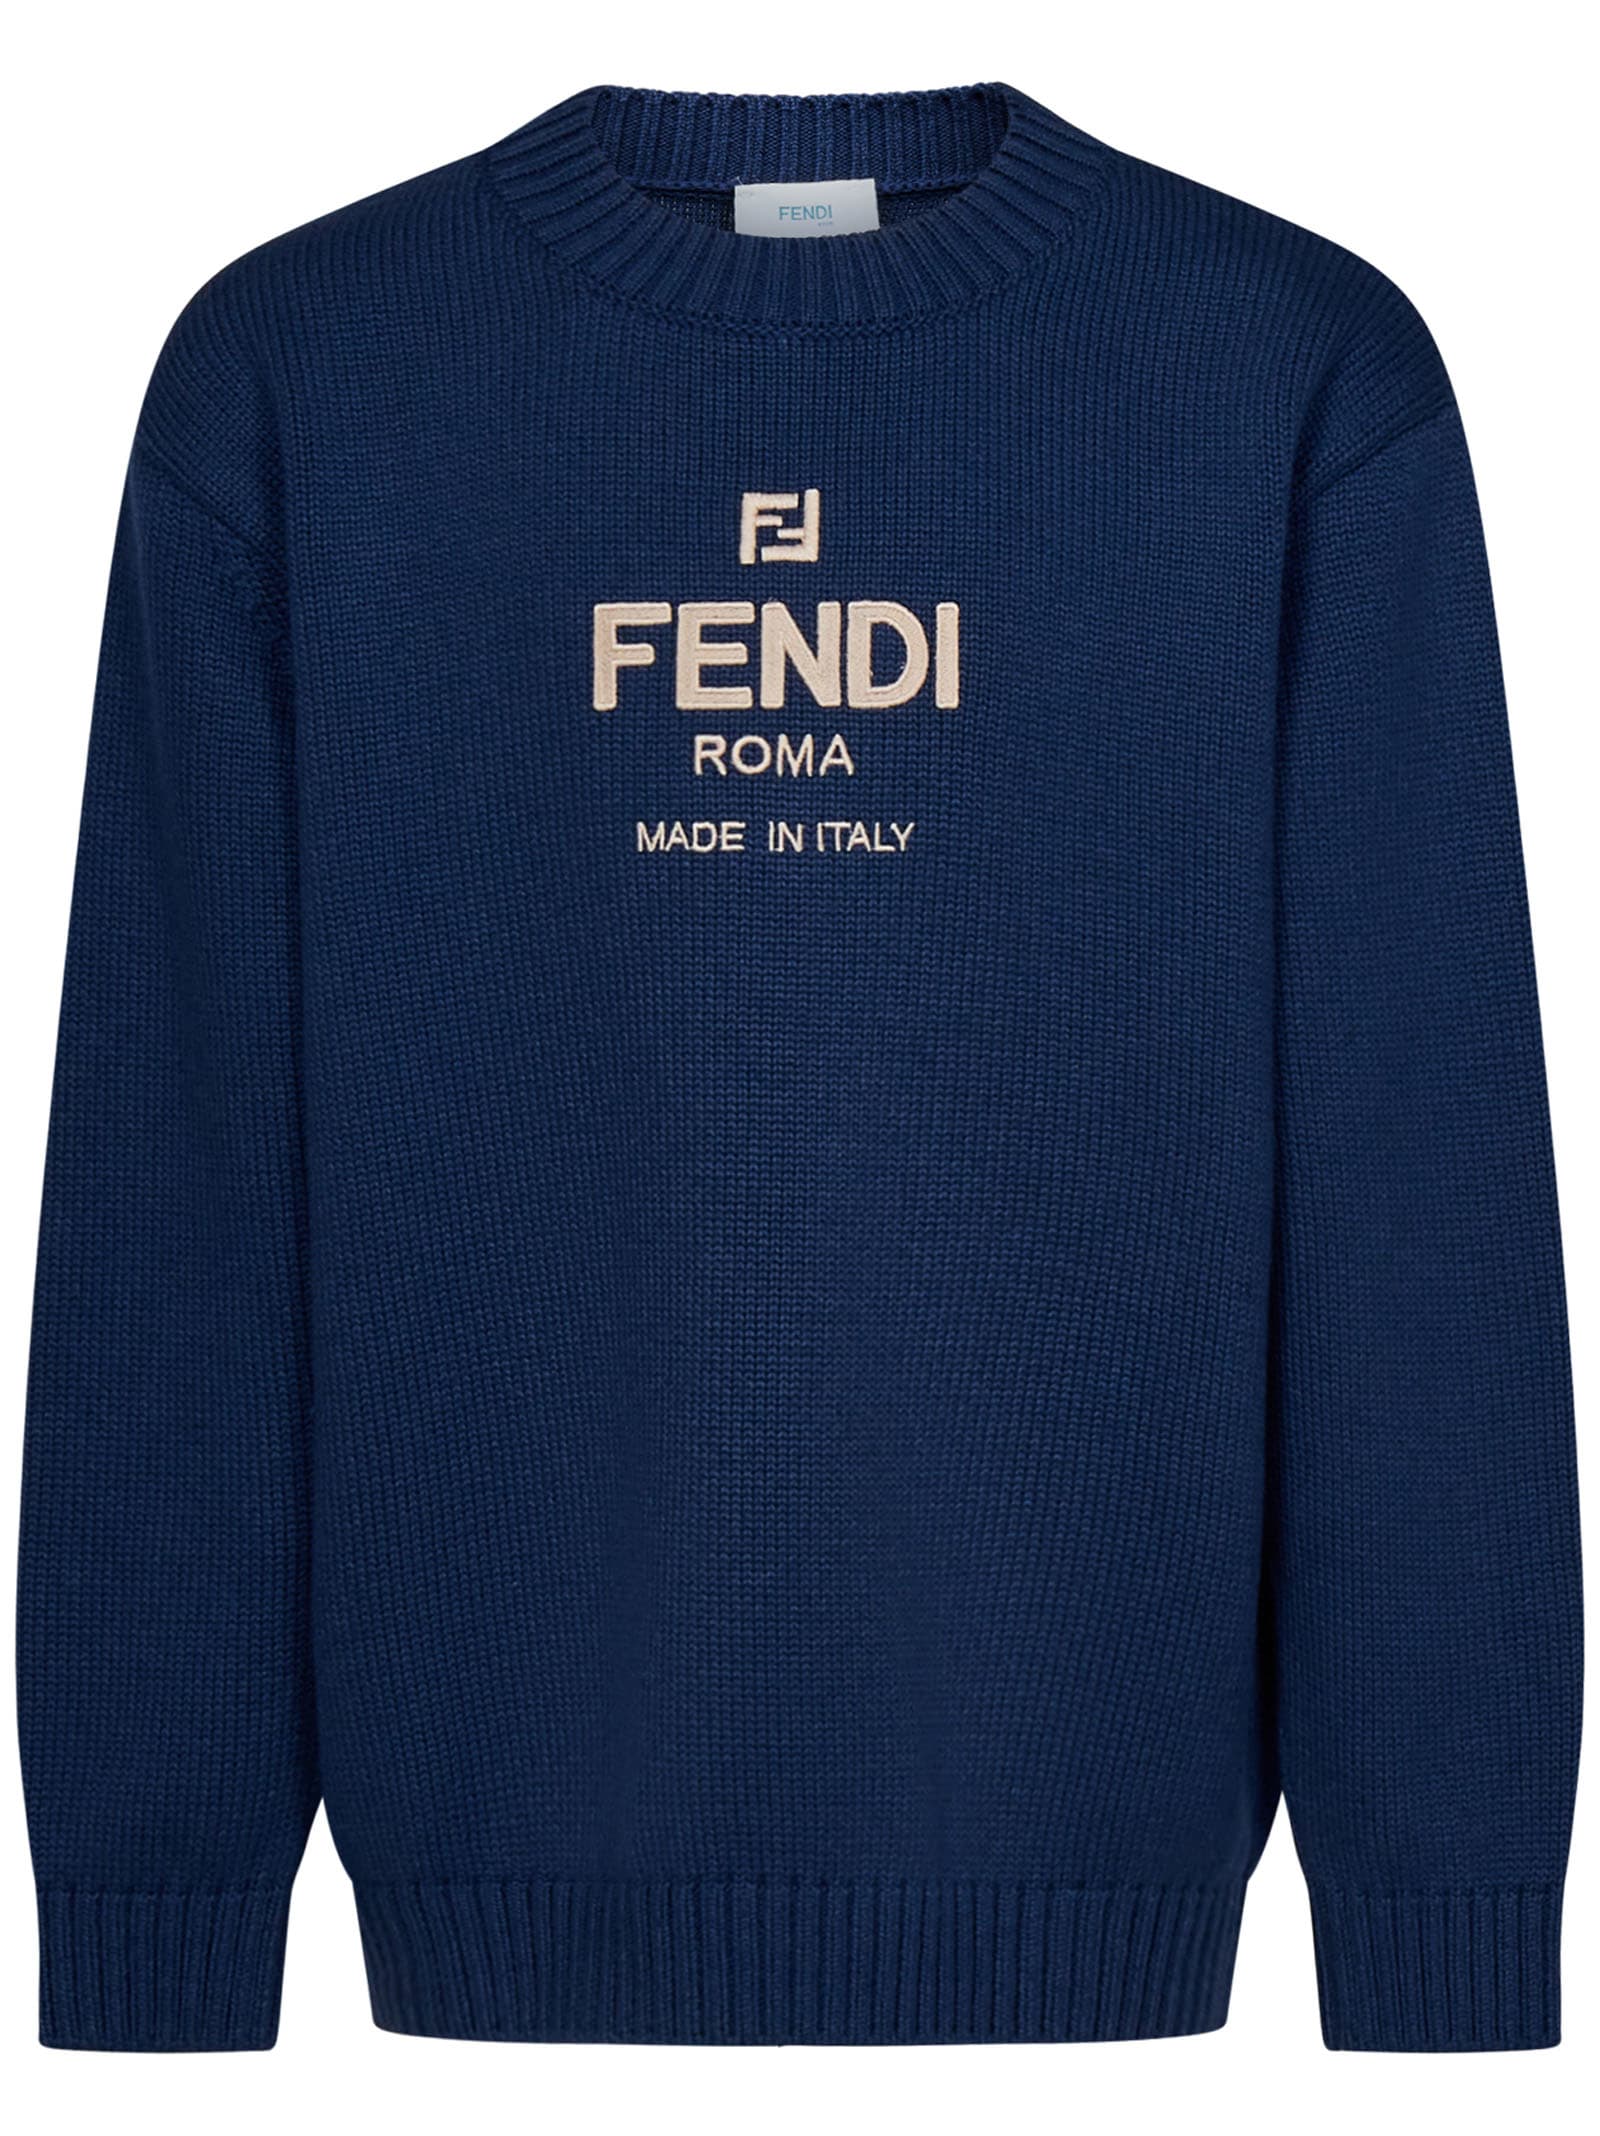 Fendi Kids' Sweater In Blue